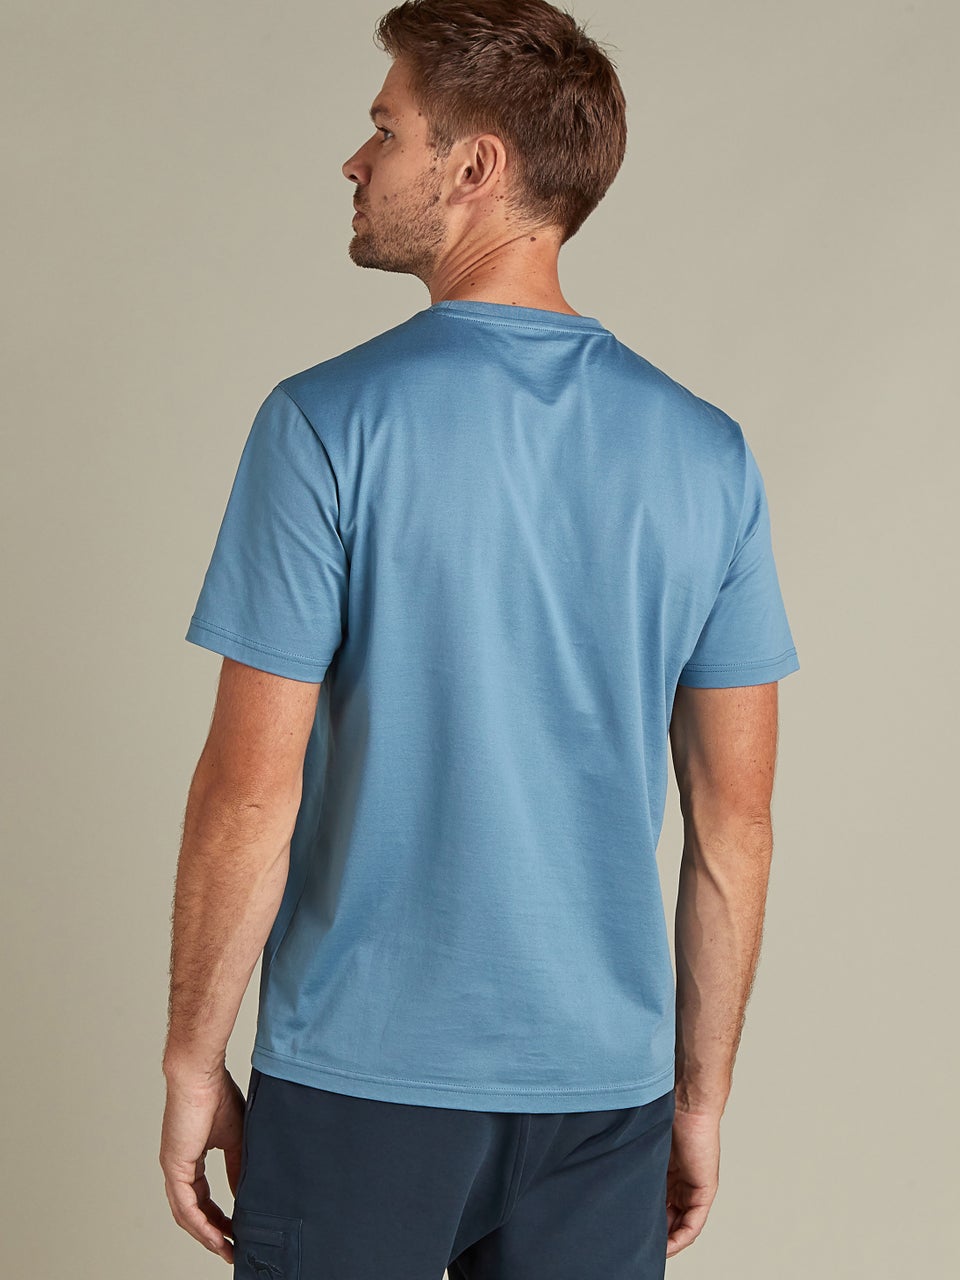 Premium Essential T-shirt Blue - S